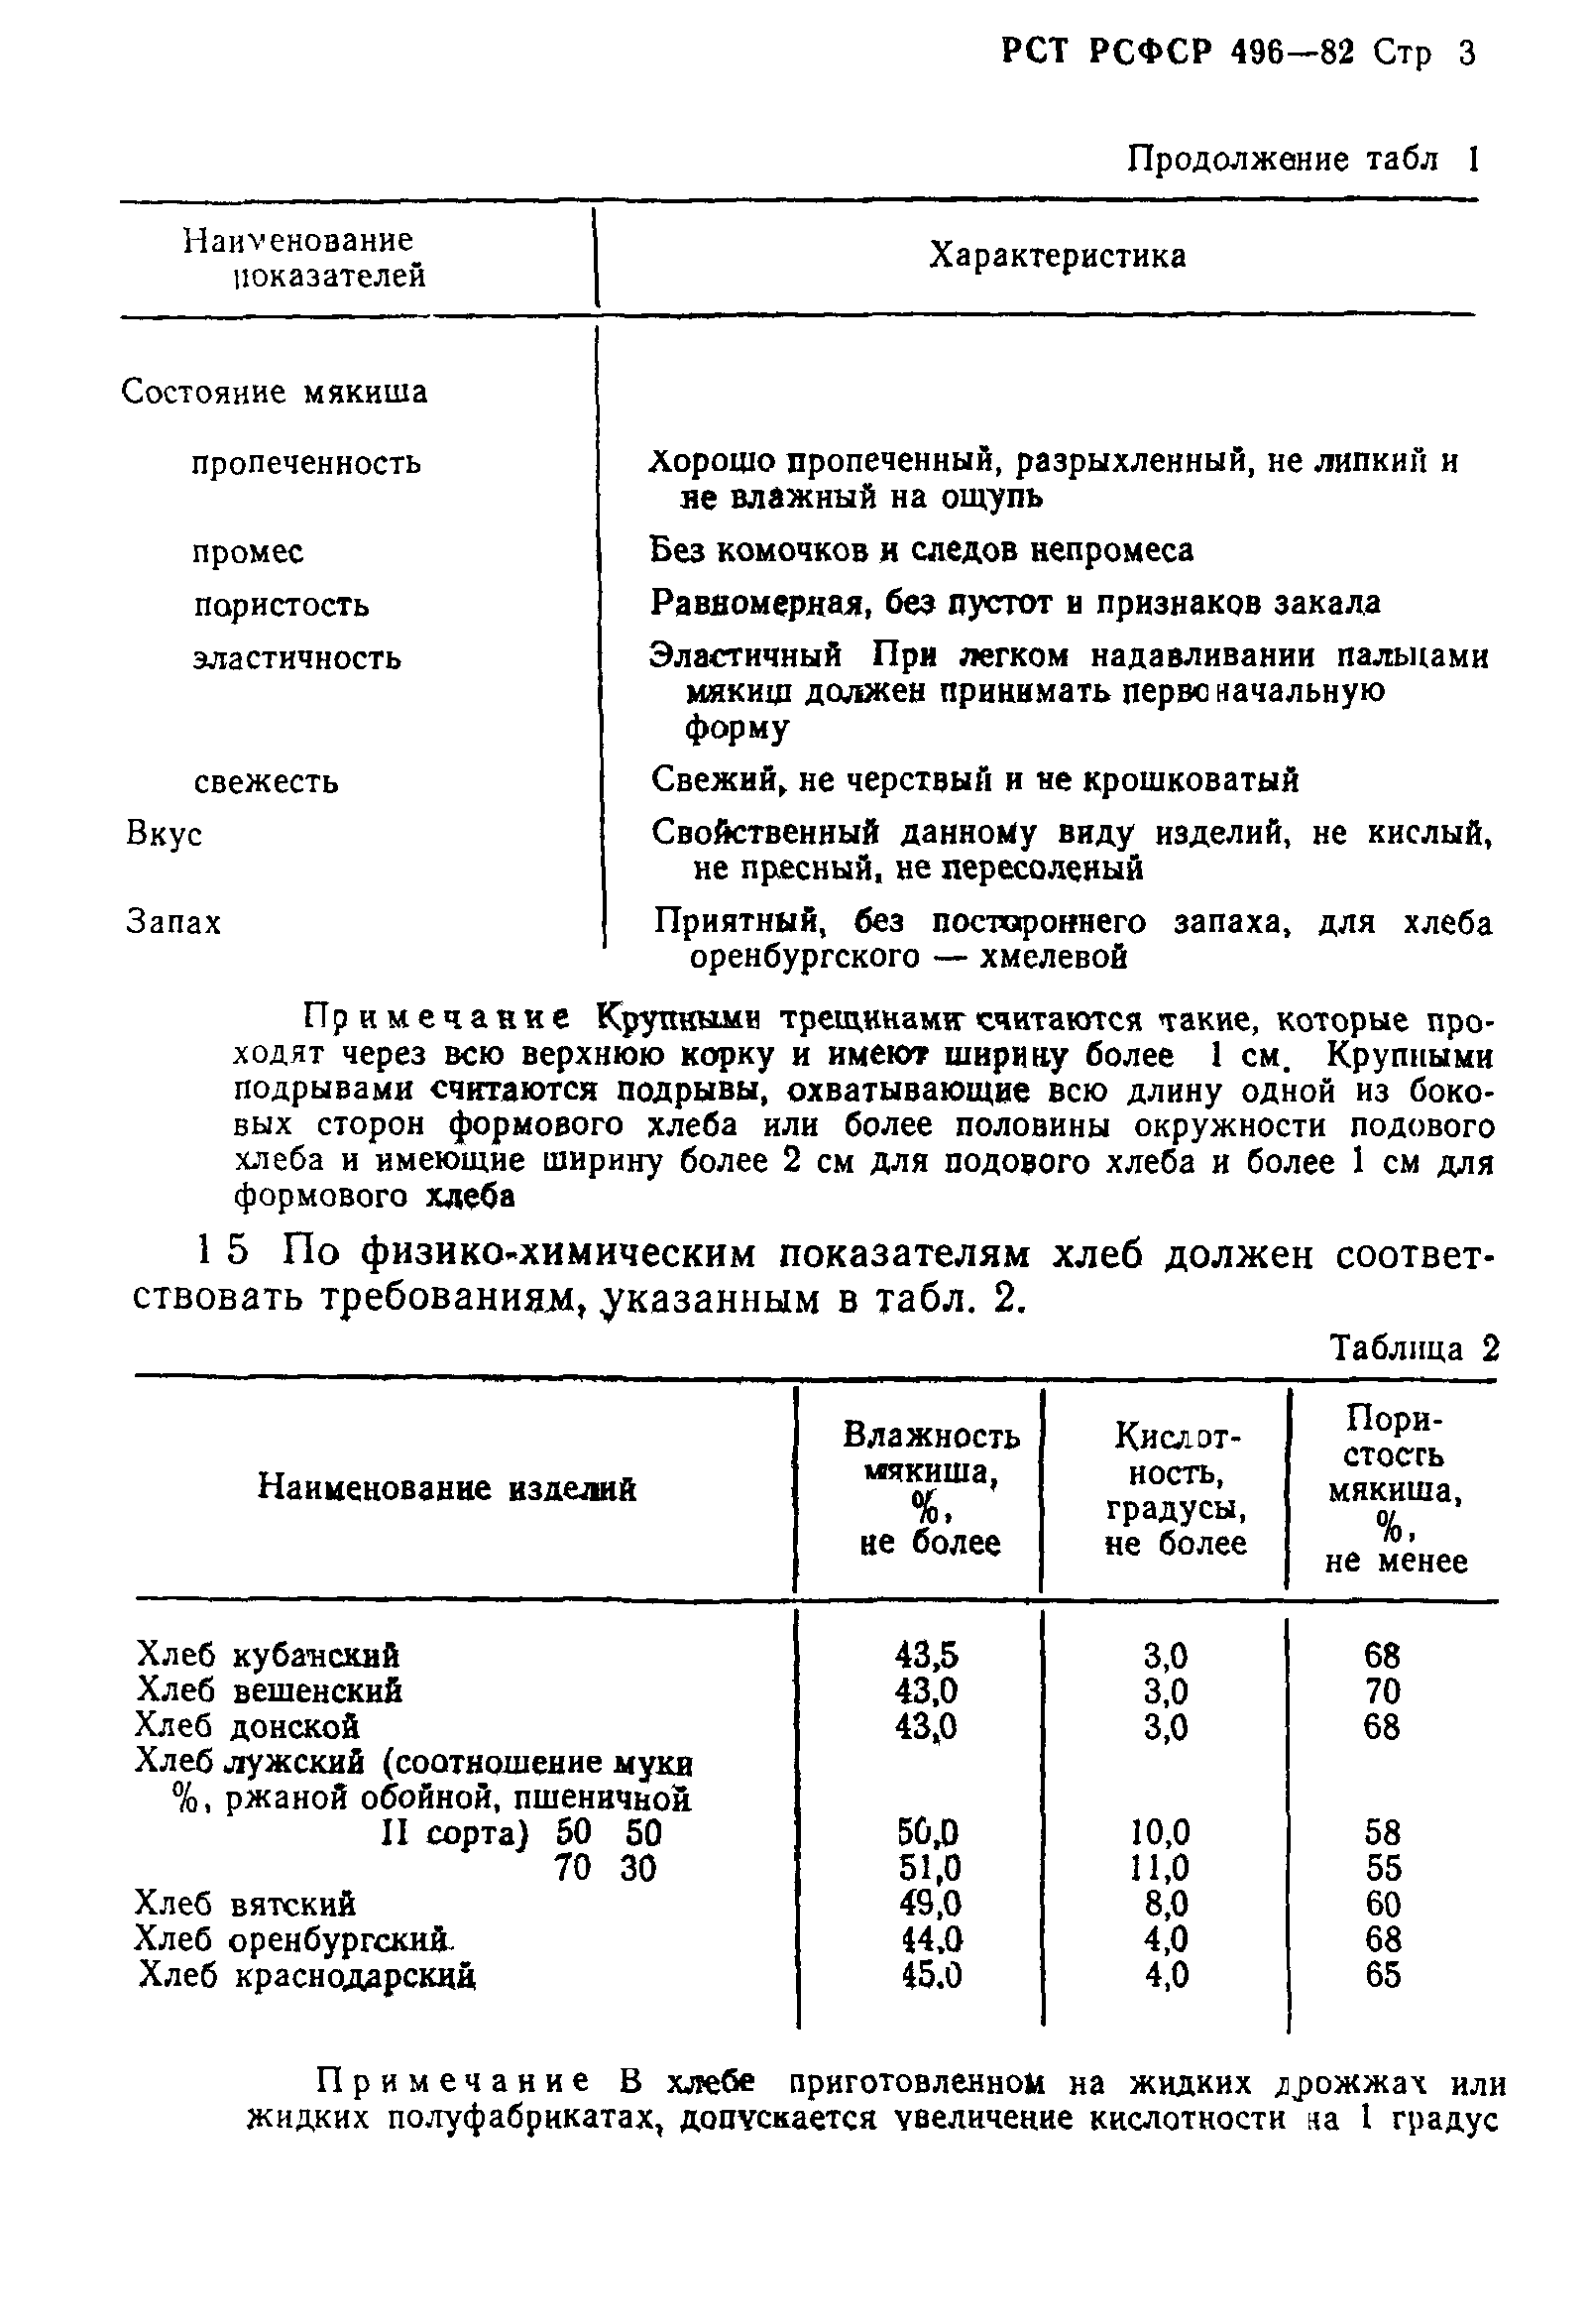 РСТ РСФСР 496-82